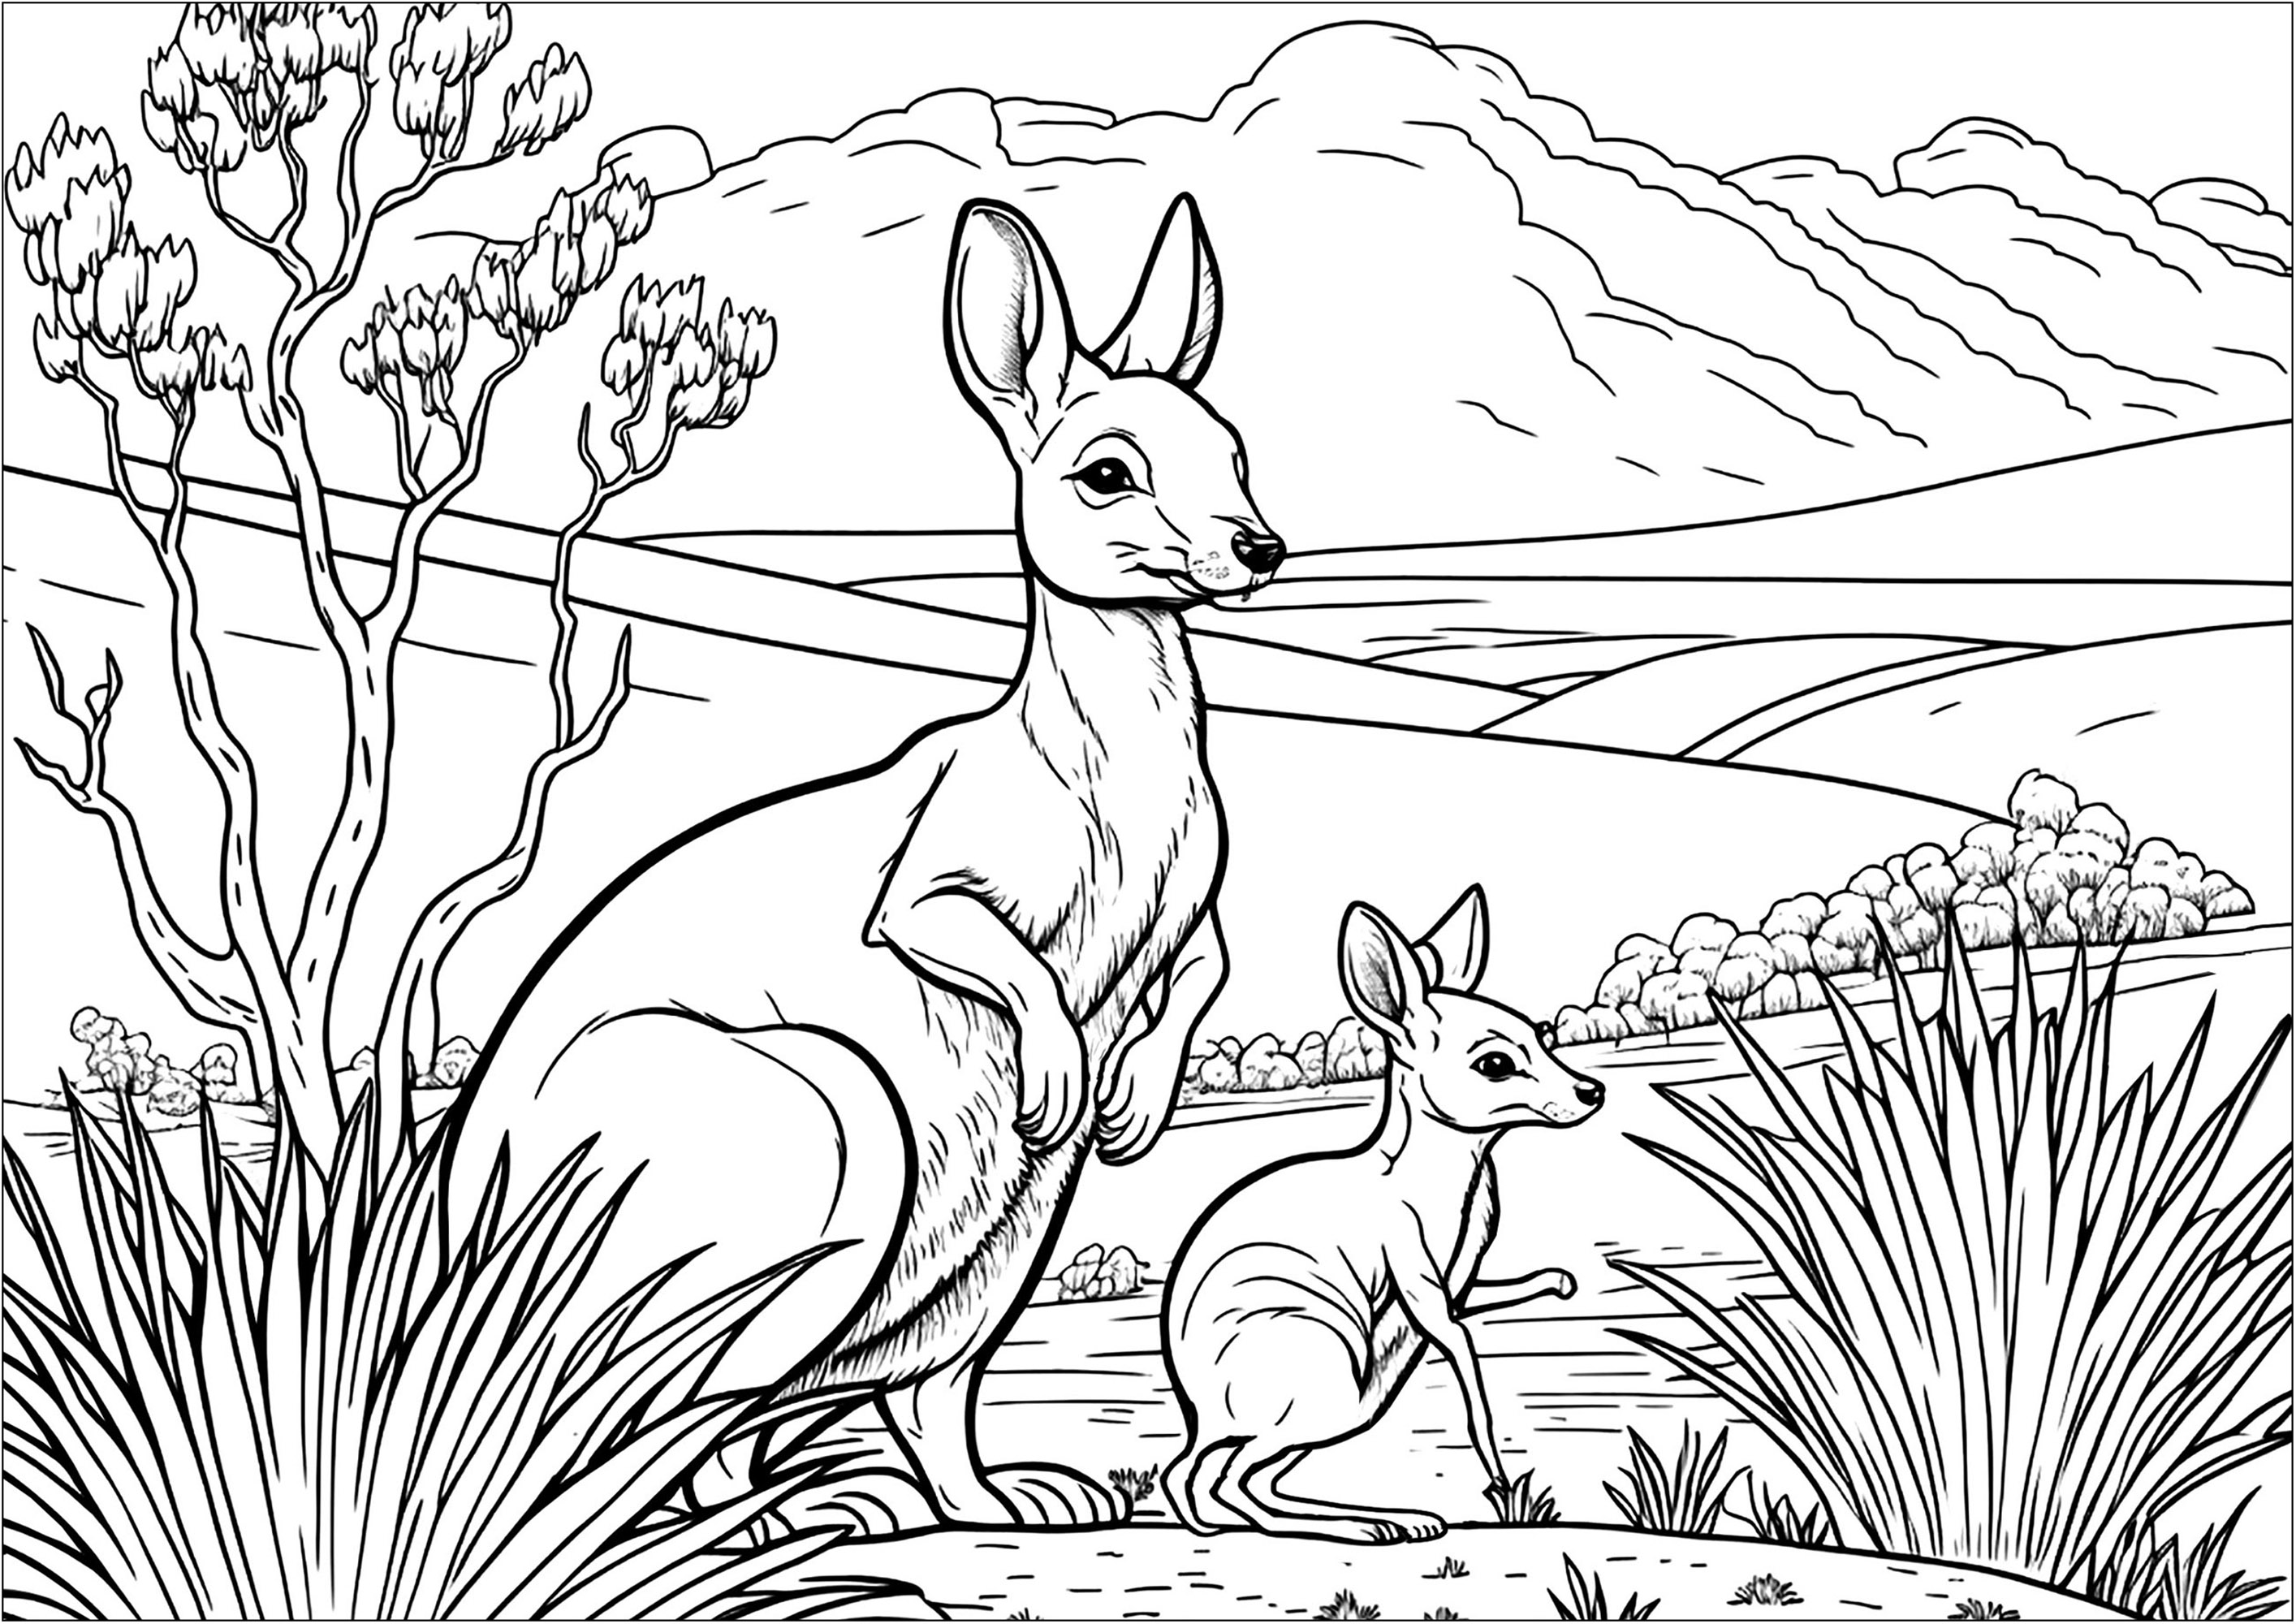 Una página para colorear bastante compleja con una madre canguro y su bebé. Colorea también el hermoso paisaje y la vegetación que forman parte de este maravilloso dibujo para colorear.